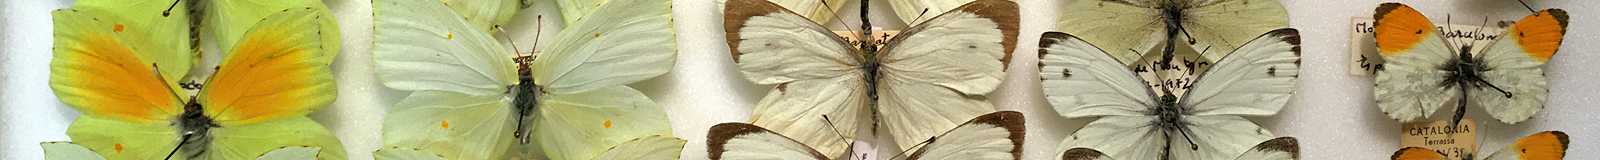 Col·lecció de Lepidoptera